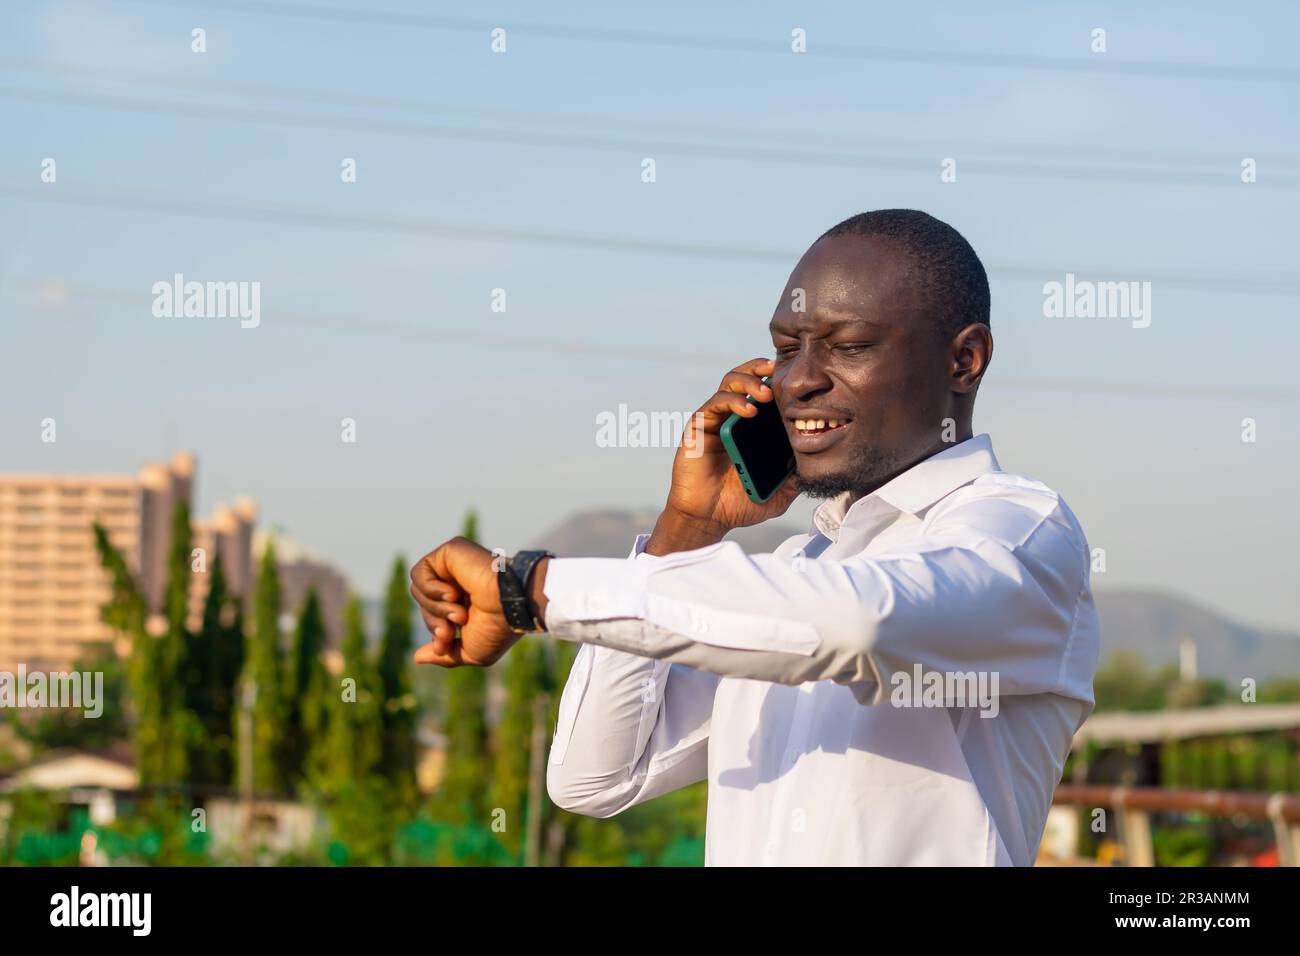 Un uomo adulto sta utilizzando un telefono cellulare, un dispositivo portatile di informazione abilitato dalla tecnologia wireless per la comunicazione e la tecnologia. Foto Stock